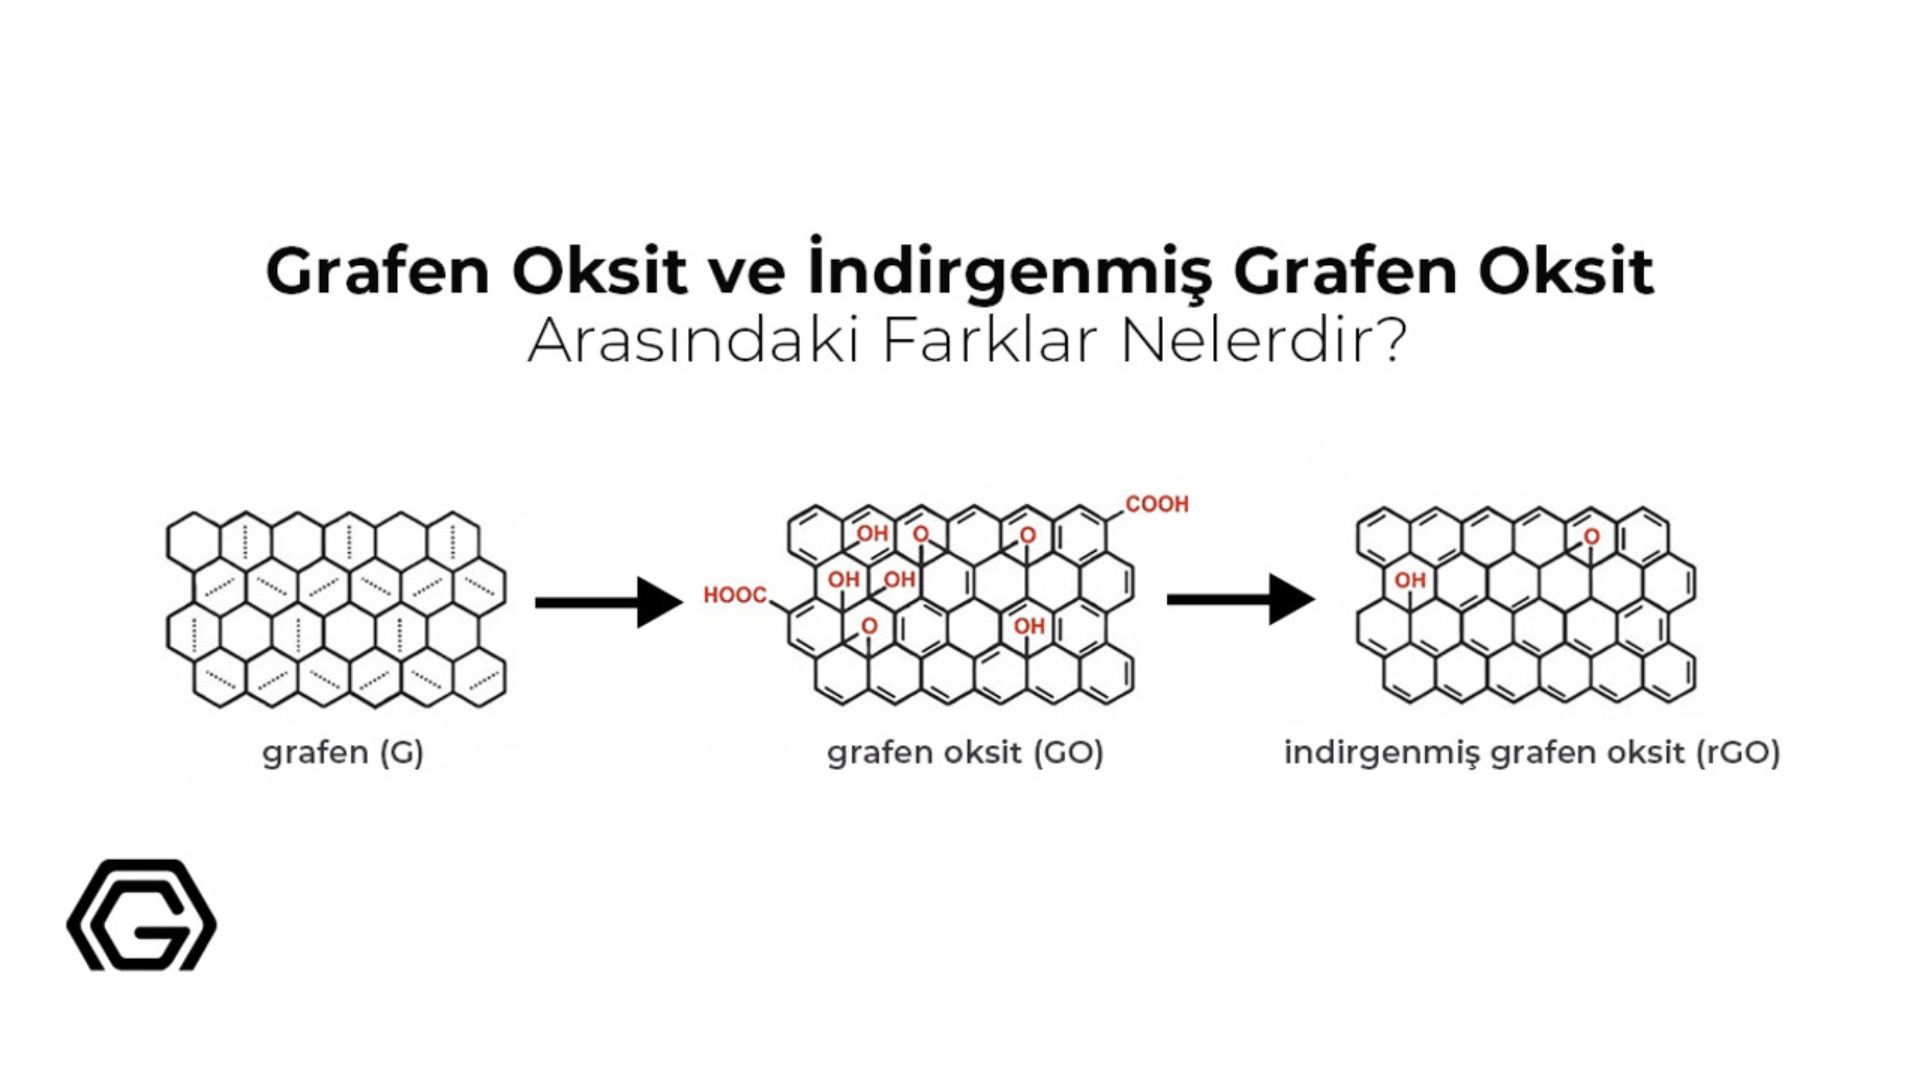 Grafen Oksit ve İndirgenmiş Grafen Oksit Arasındaki Farklar Nelerdir?